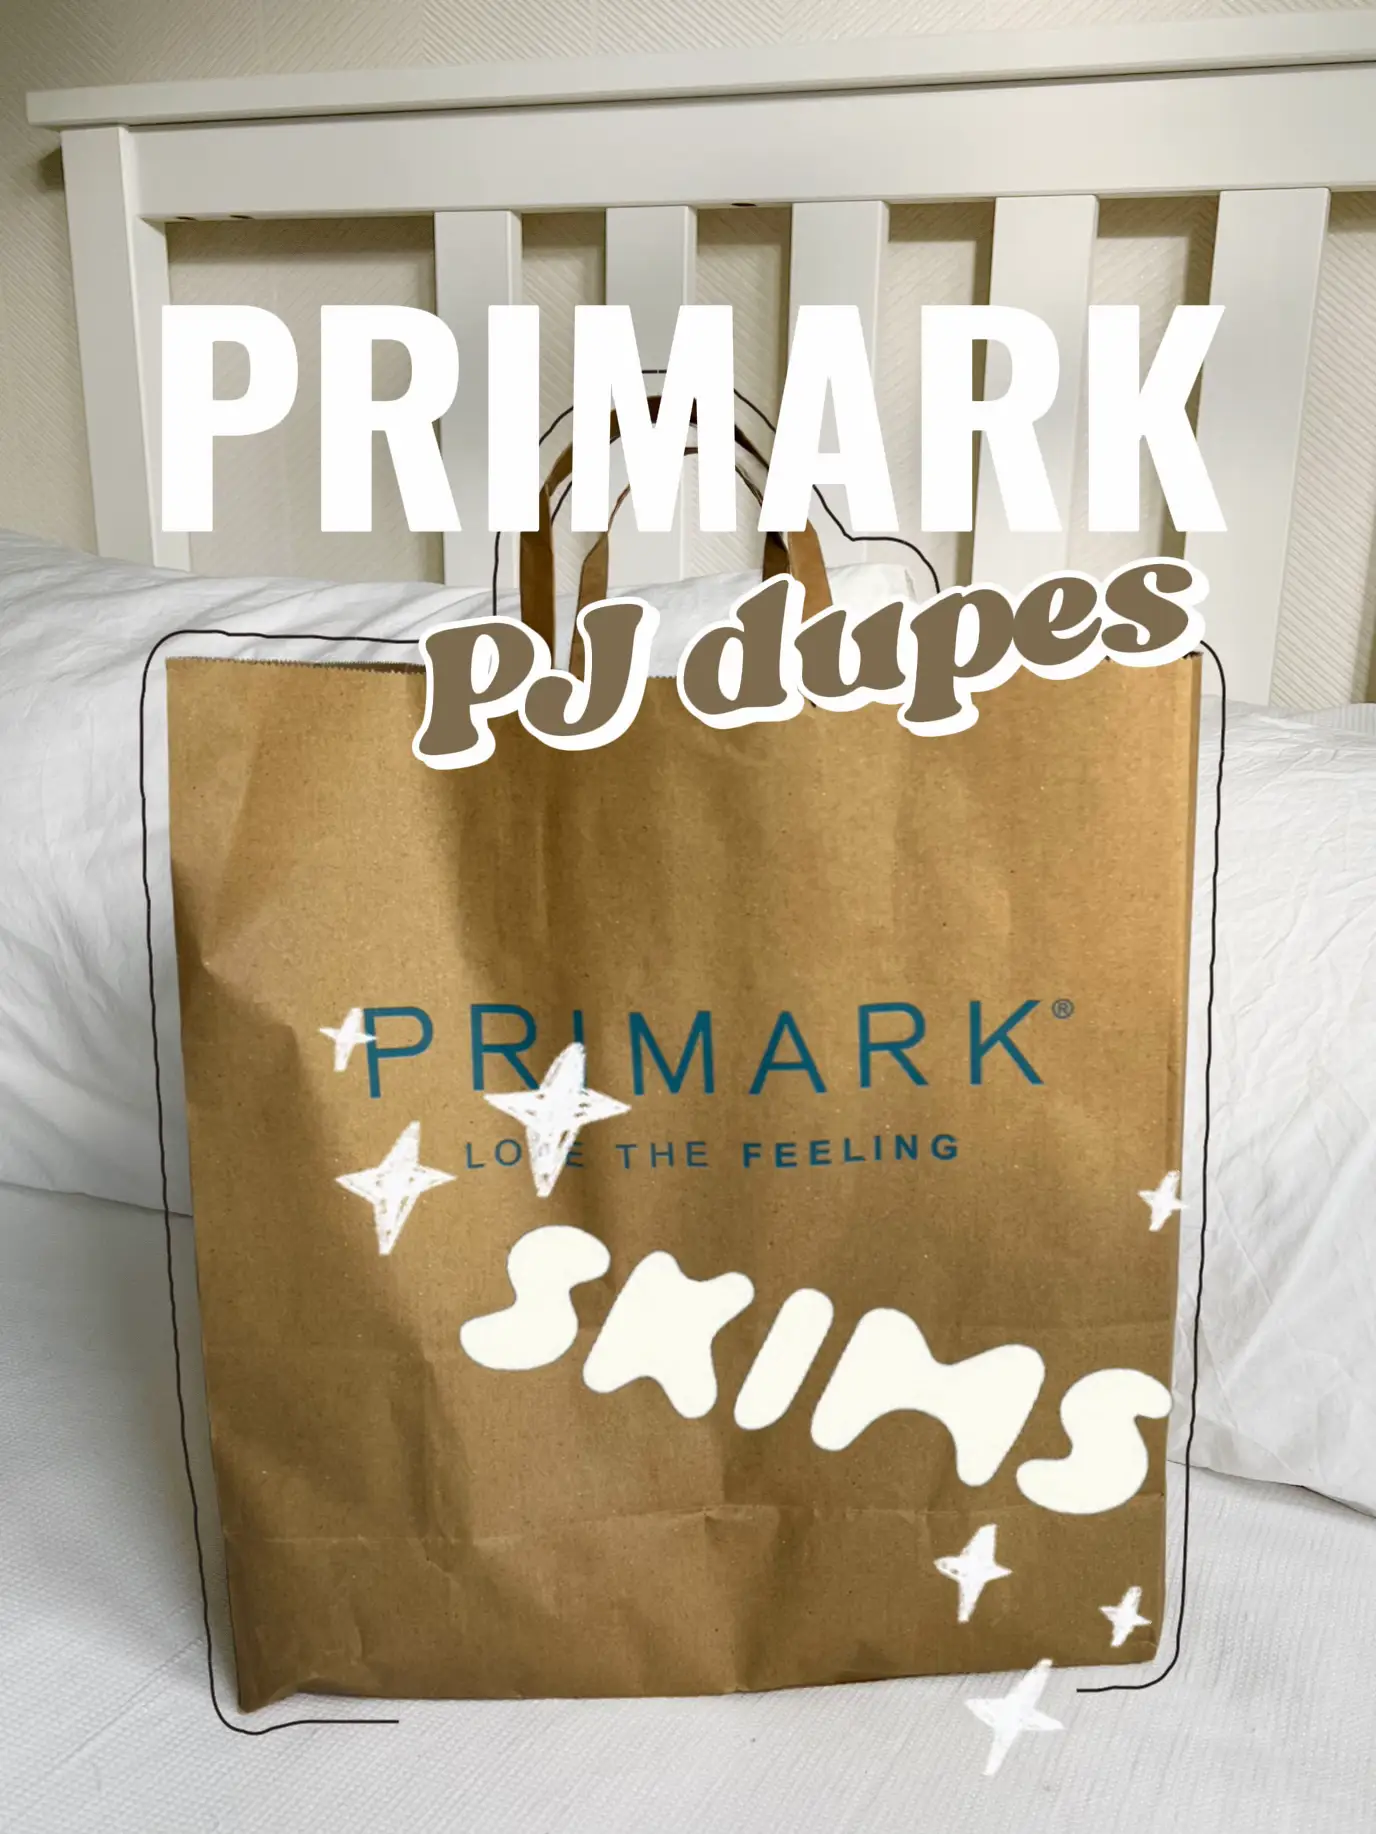 Our favourite £6 @Primark underwear sets 🙌#primark